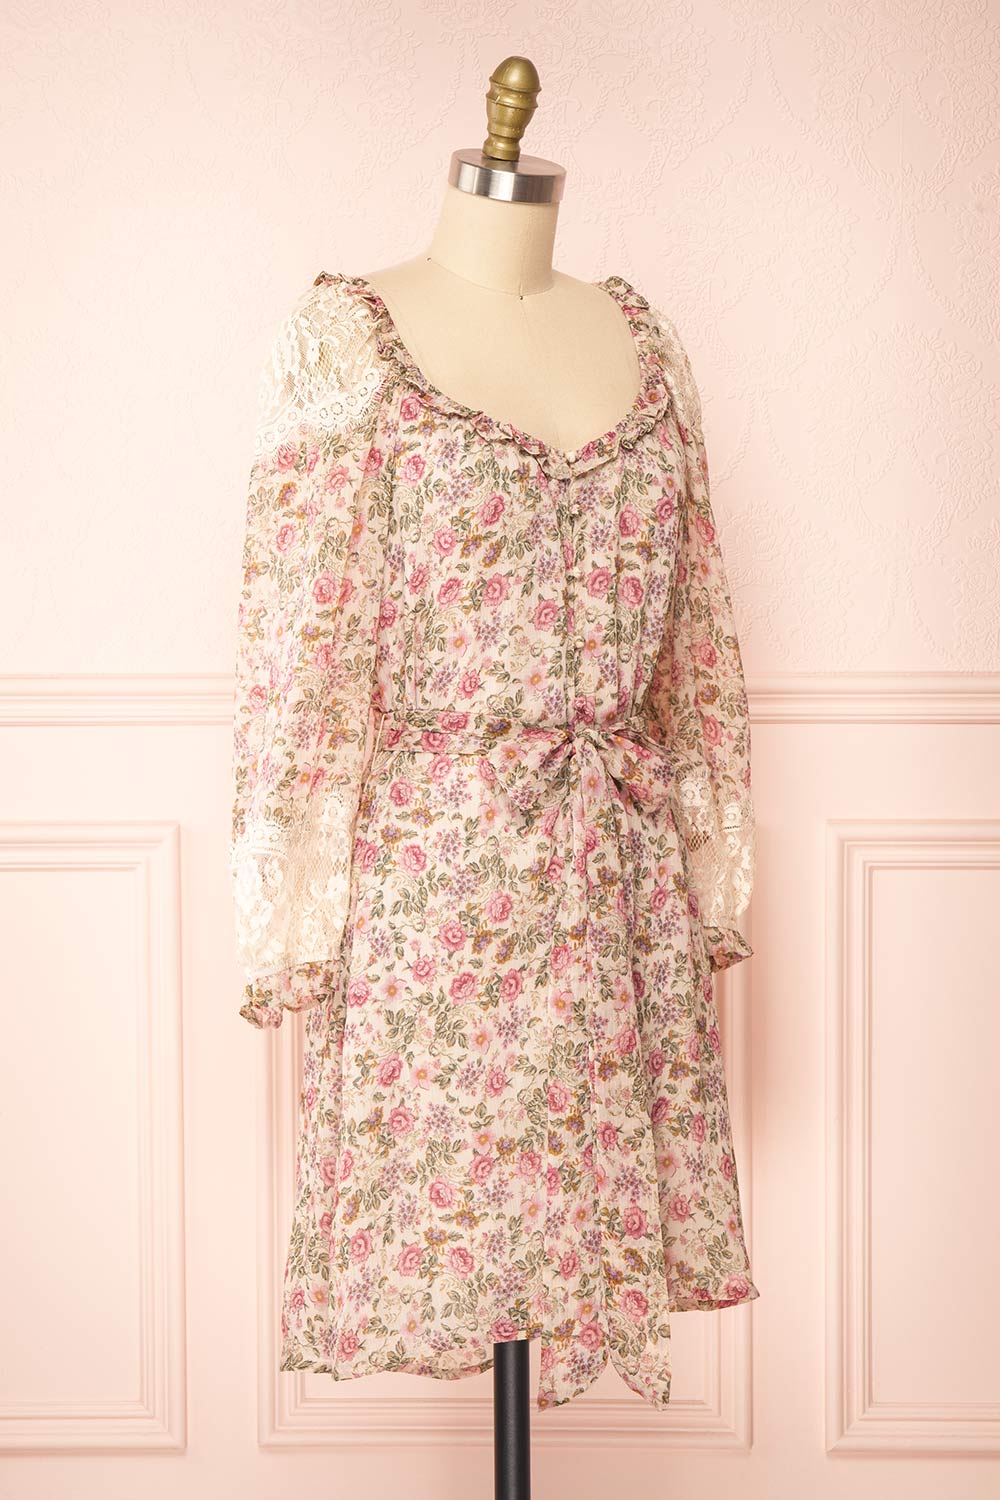 Jolia Short Floral Button-Up Dress | Boutique 1861 side view